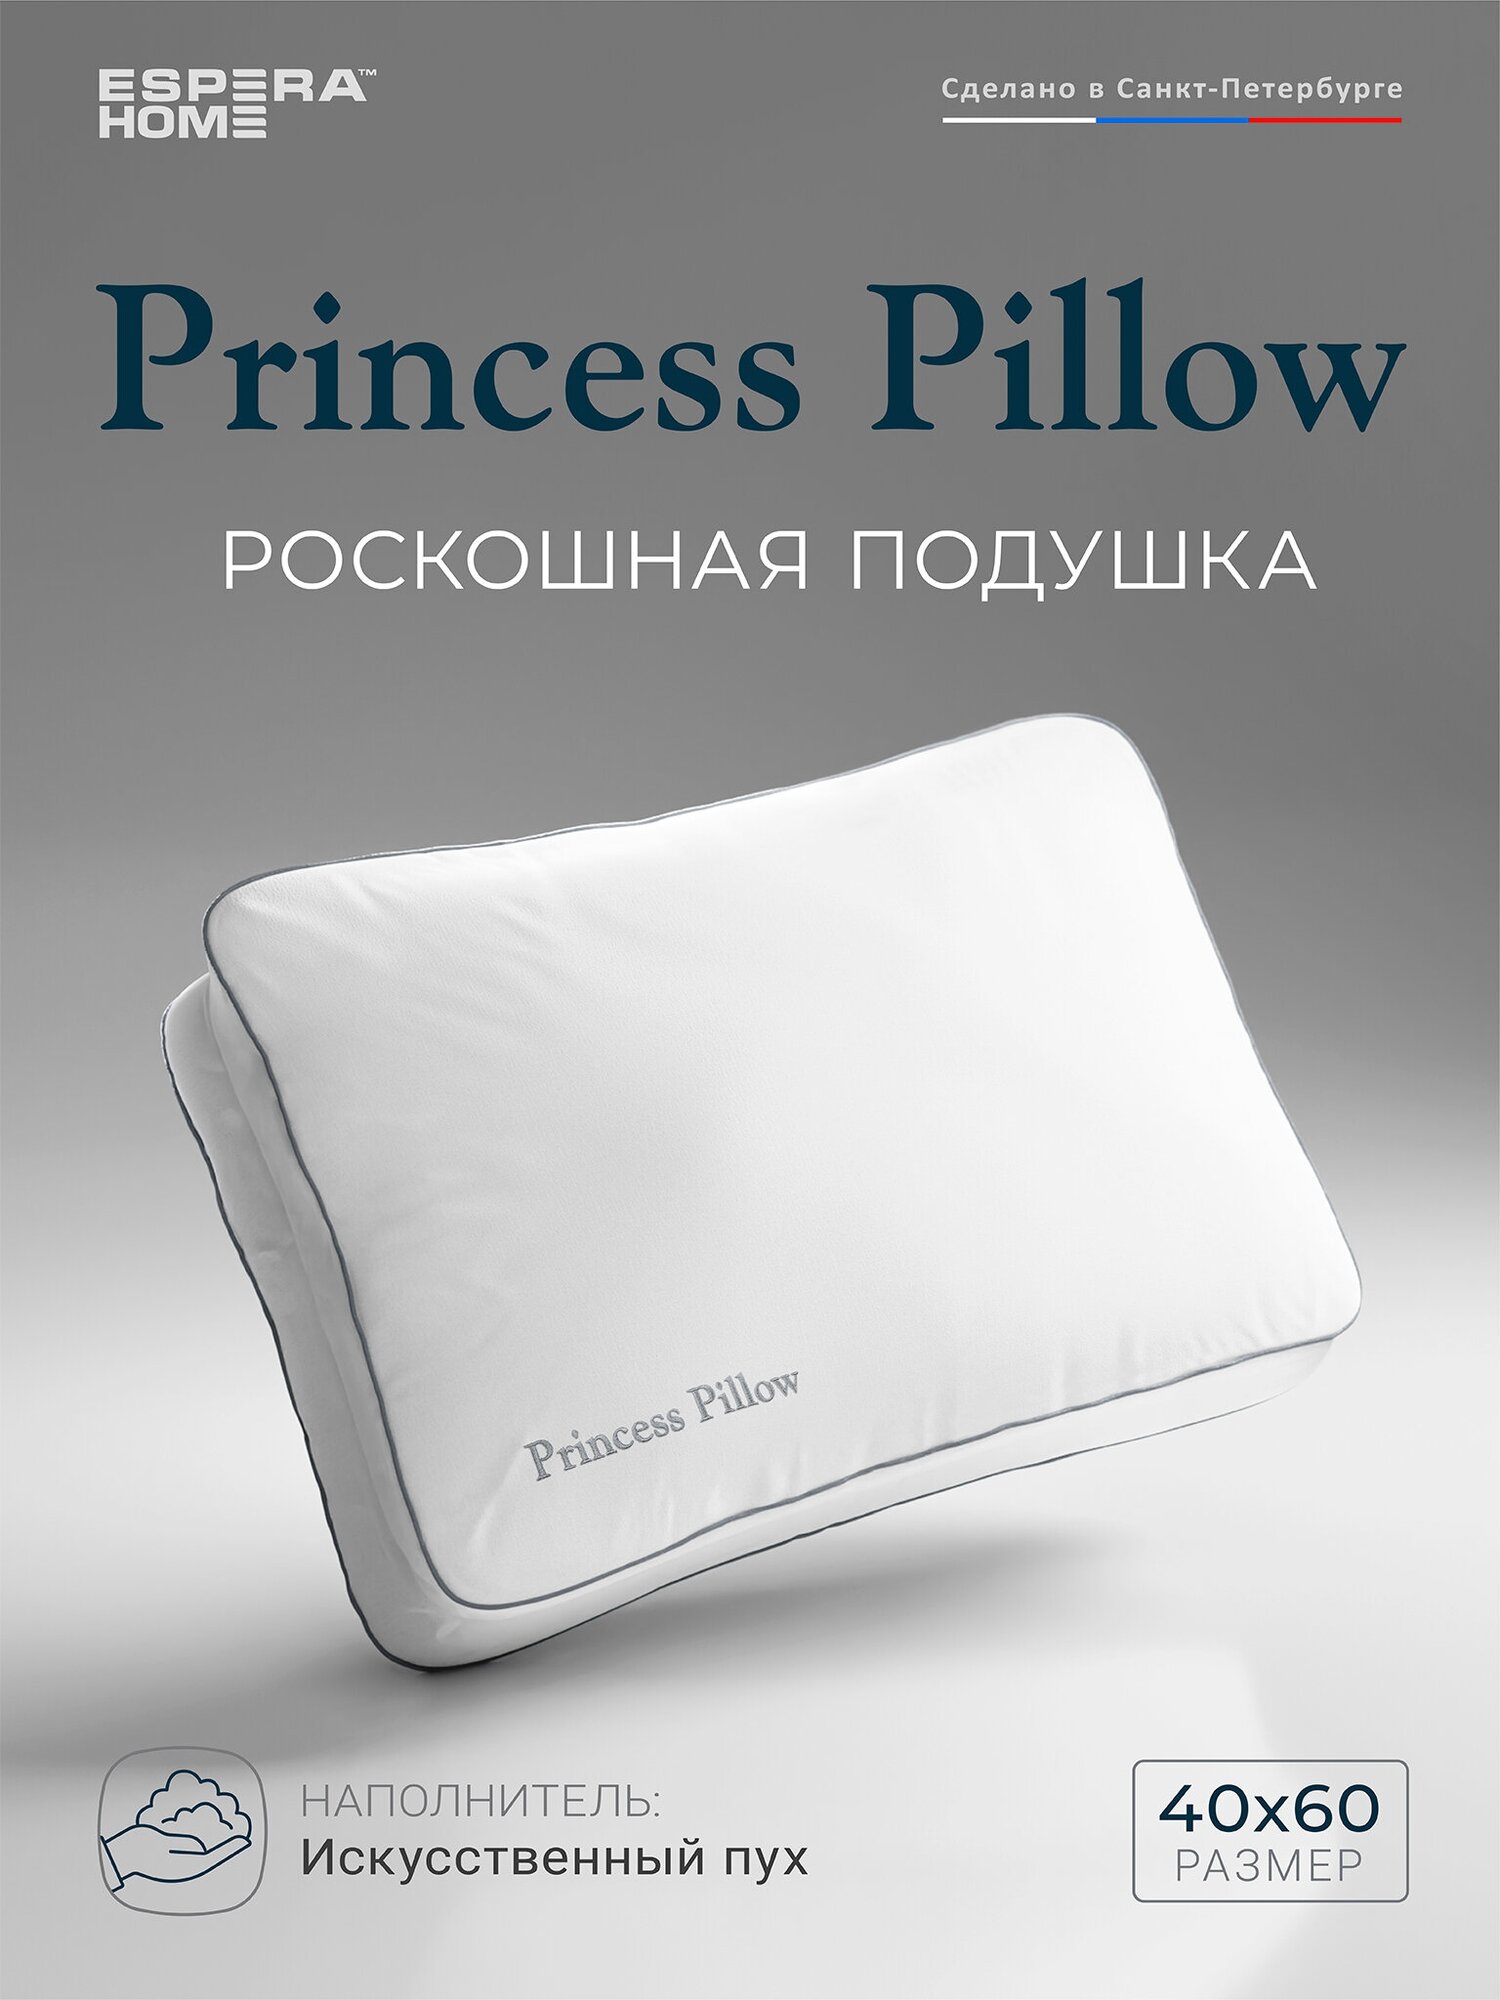 Подушка "Princess Pillow" Alaska Red Label, 40х60